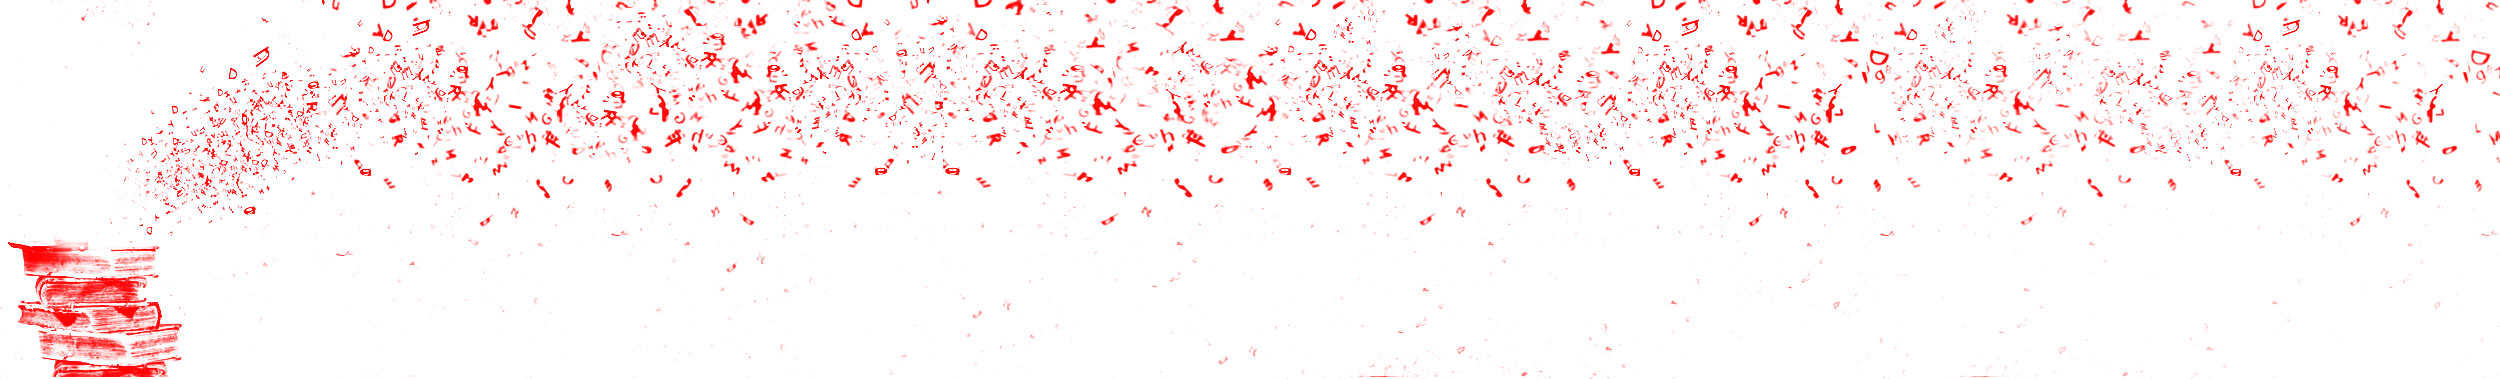 Header-Schreiben-Bild_ebenen-zusammengefuegt-rot-transparent